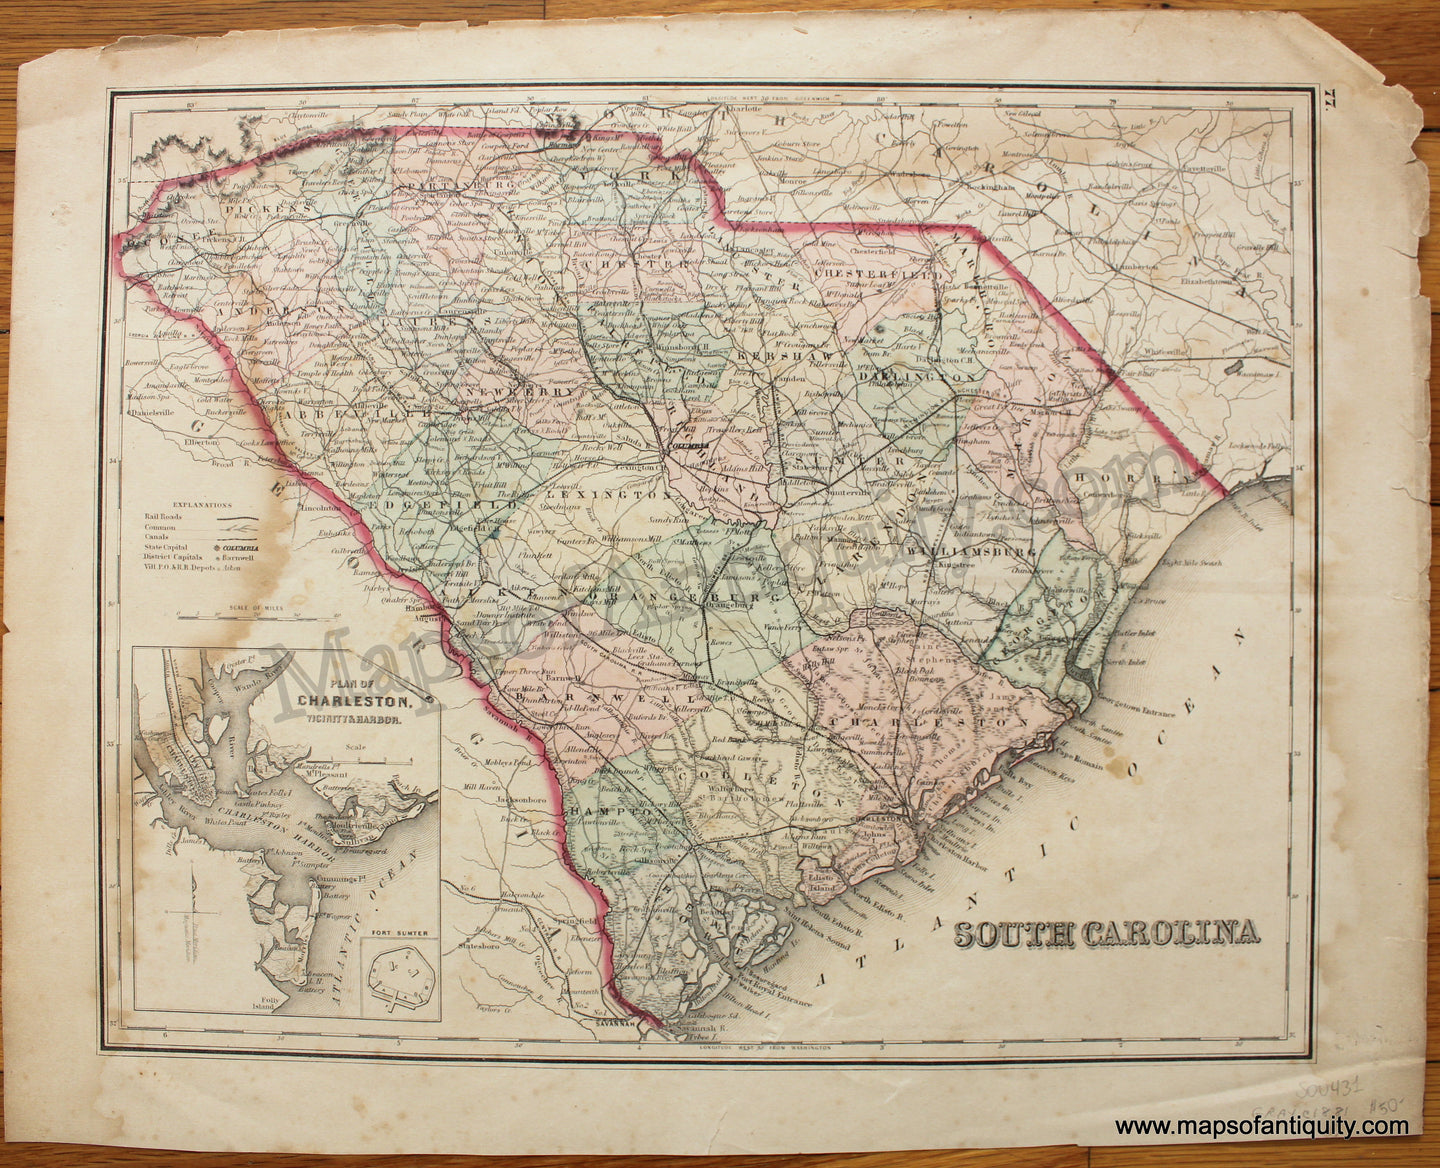 Antique-Hand-Colored-Map-South-Carolina-c.-1881-Gray-South-South-Carolina-1800s-19th-century-Maps-of-Antiquity